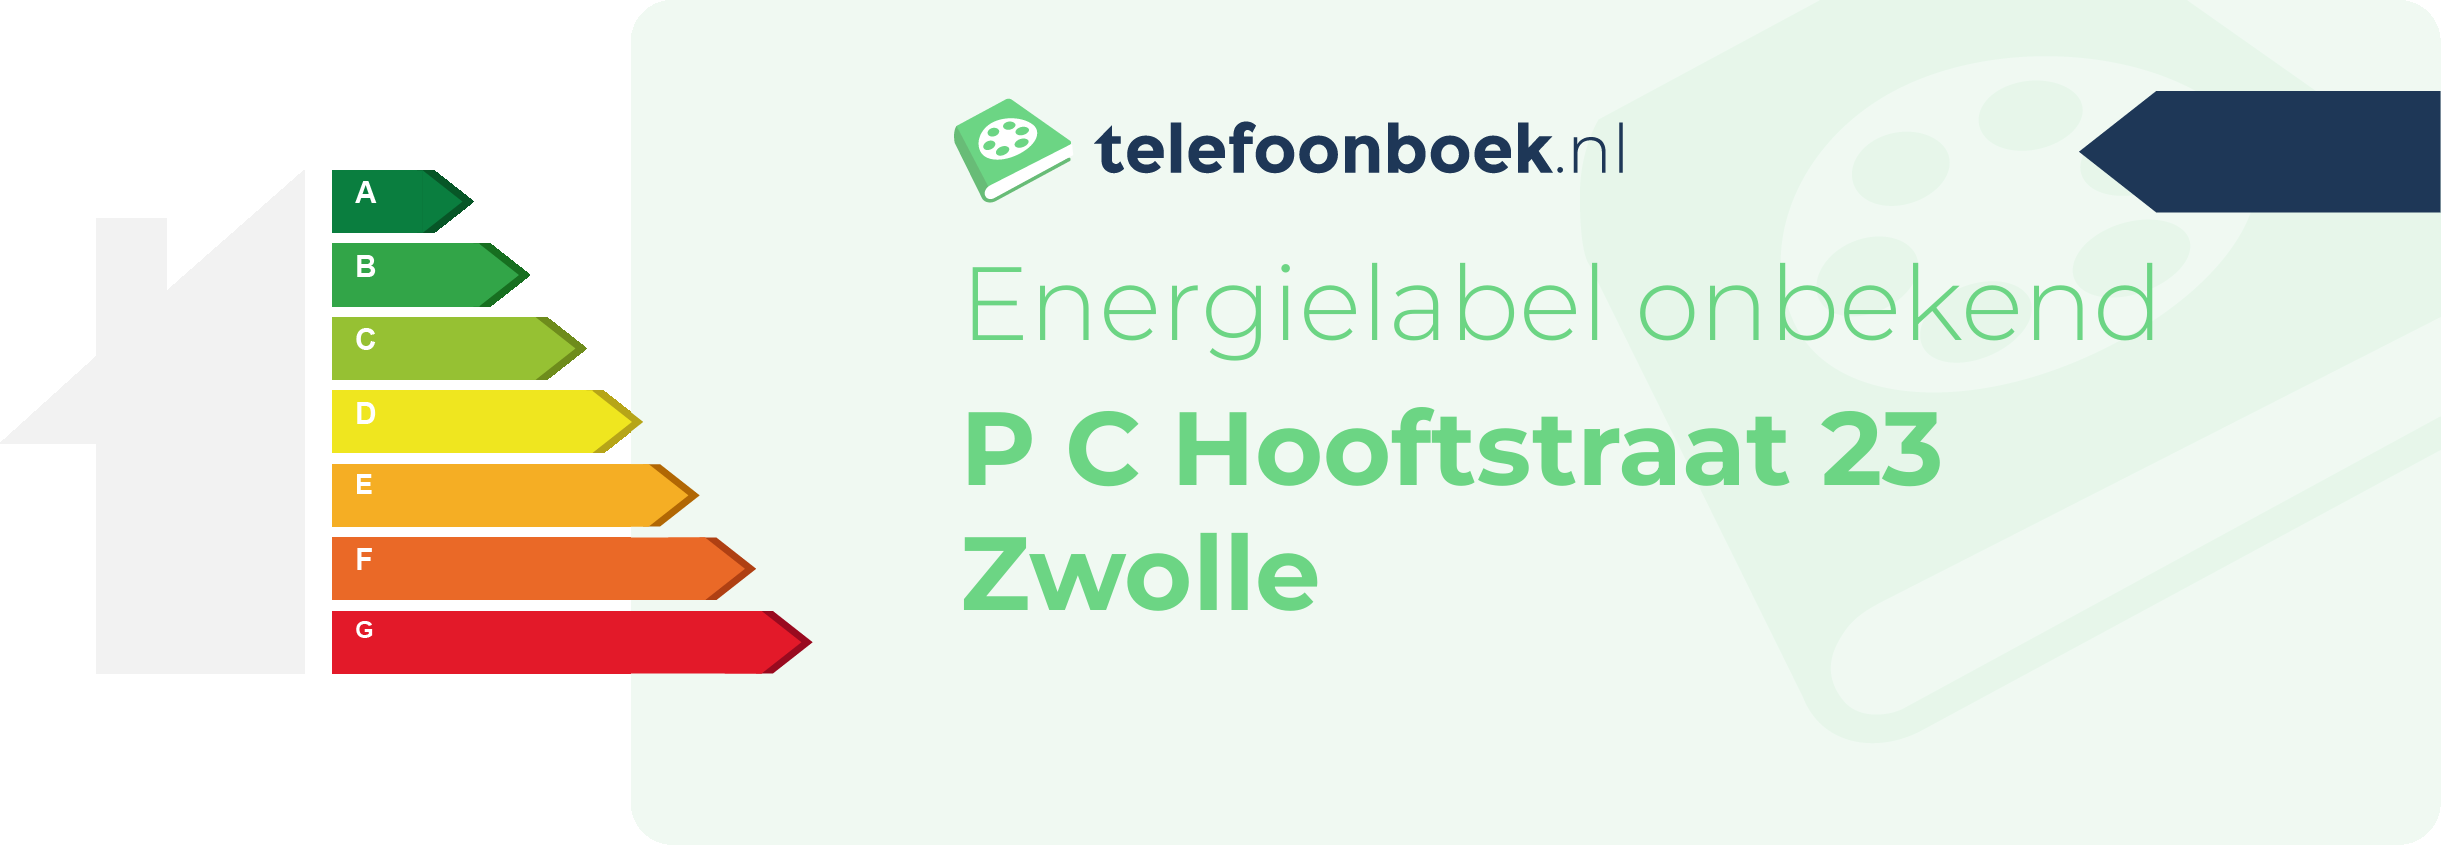 Energielabel P C Hooftstraat 23 Zwolle